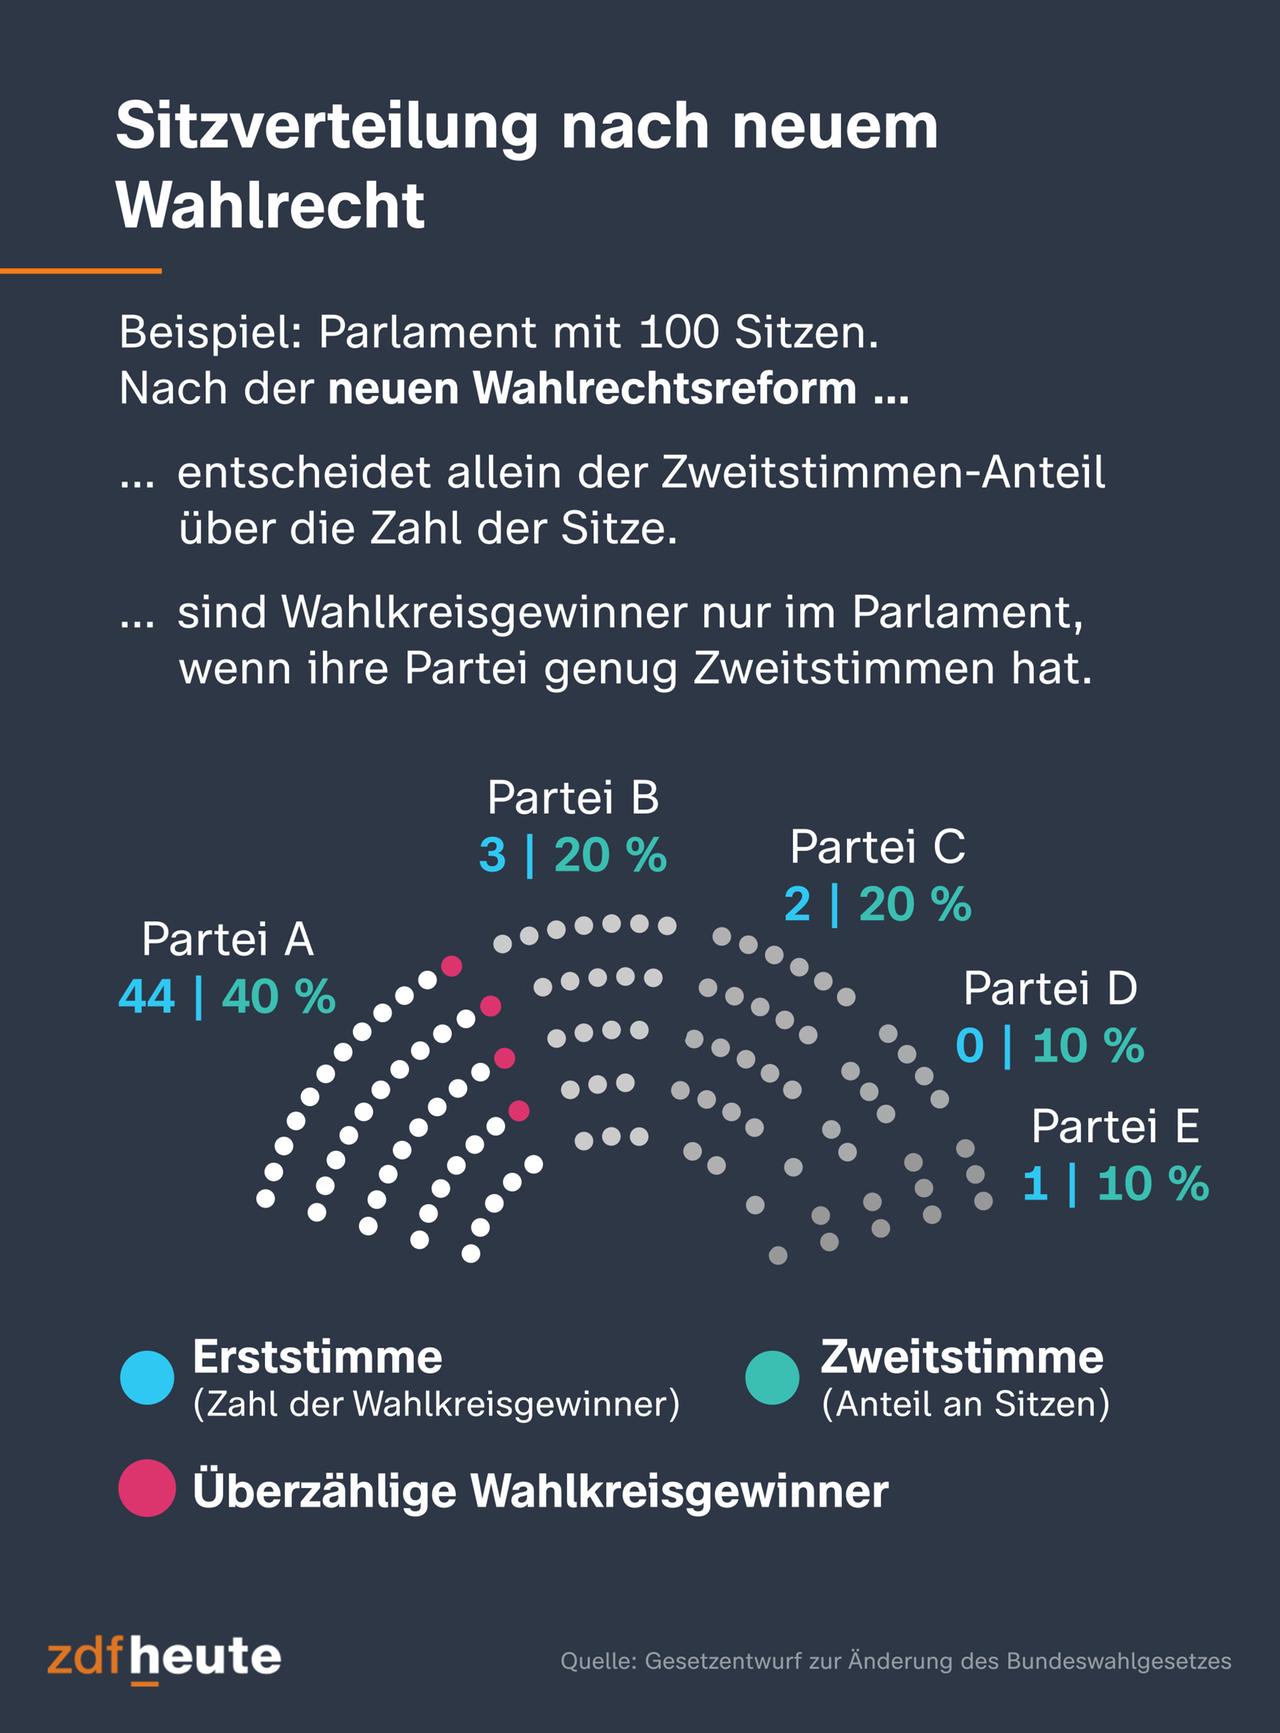 Die Grafik zeigt, wie Überhang- und Ausgleichsmandate im Bundestag entstehen. Eine Partei bekommt wegen ihrer Wahlkreisgewinner mehr Sitze, als ihr nach dem Zweitstimmenanteil zustehen. Das sind die Überhangsmandate. Um das Parteienverhältnis wieder auszugleichen, bekommen die anderen Parteien Ausgleichsmandate. 